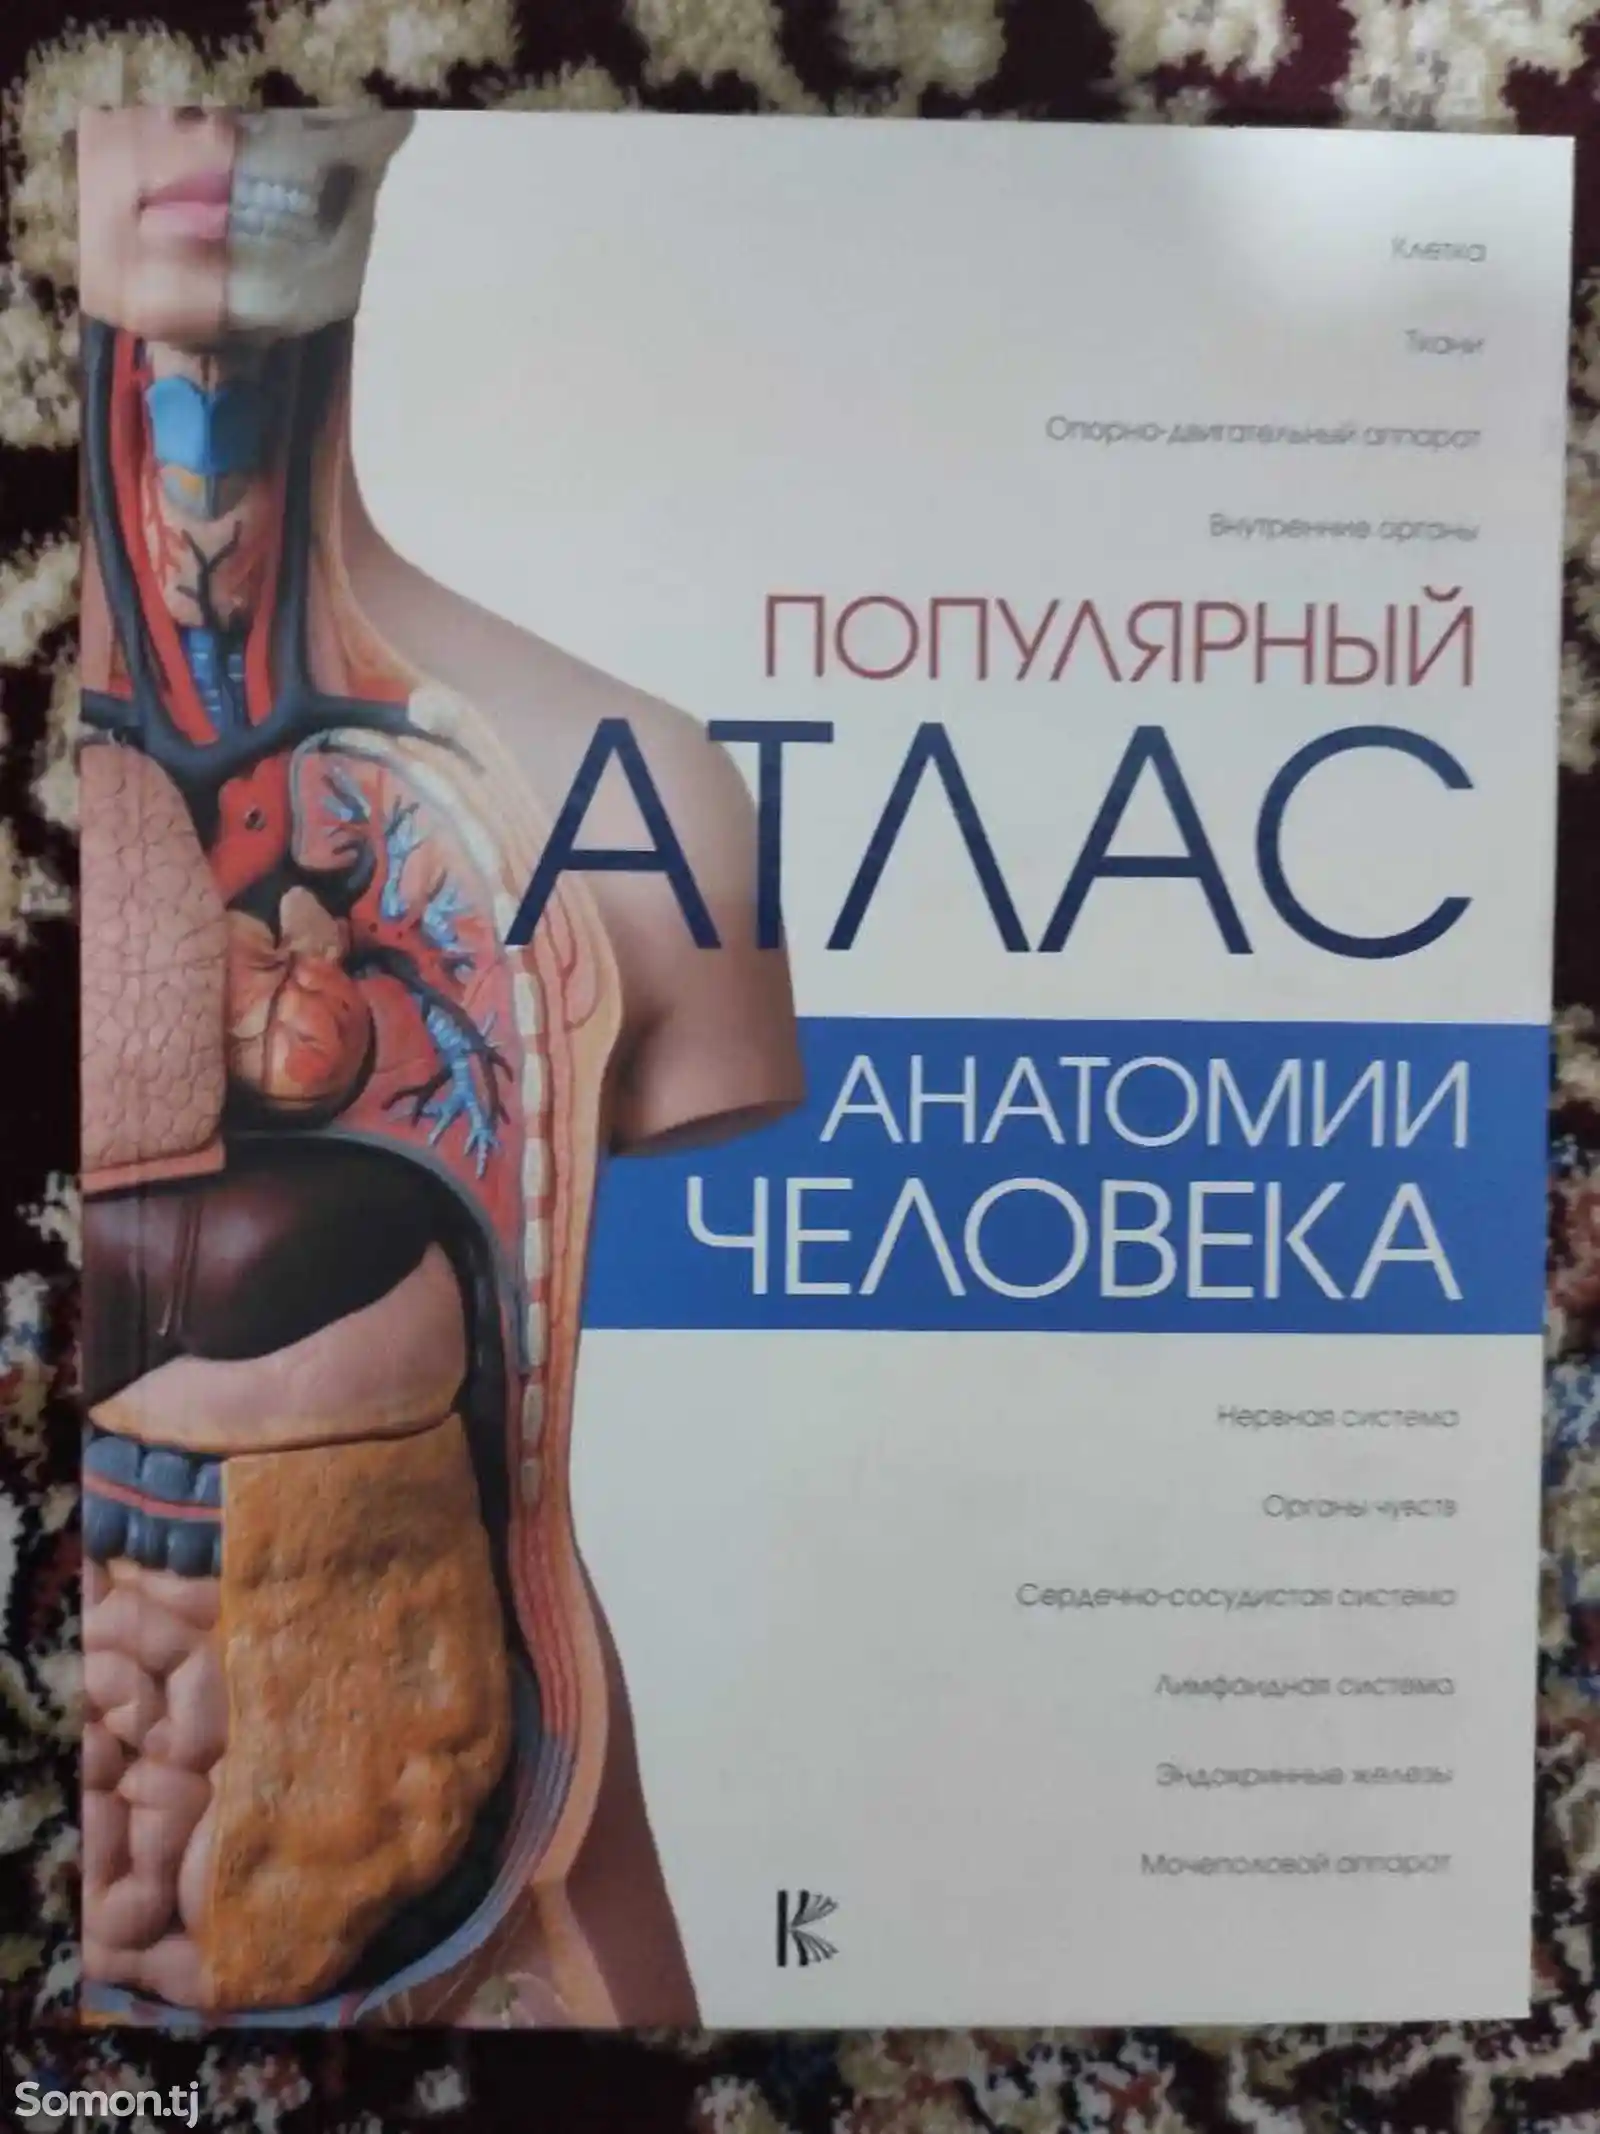 Книга Атлас Анатомия человека-1